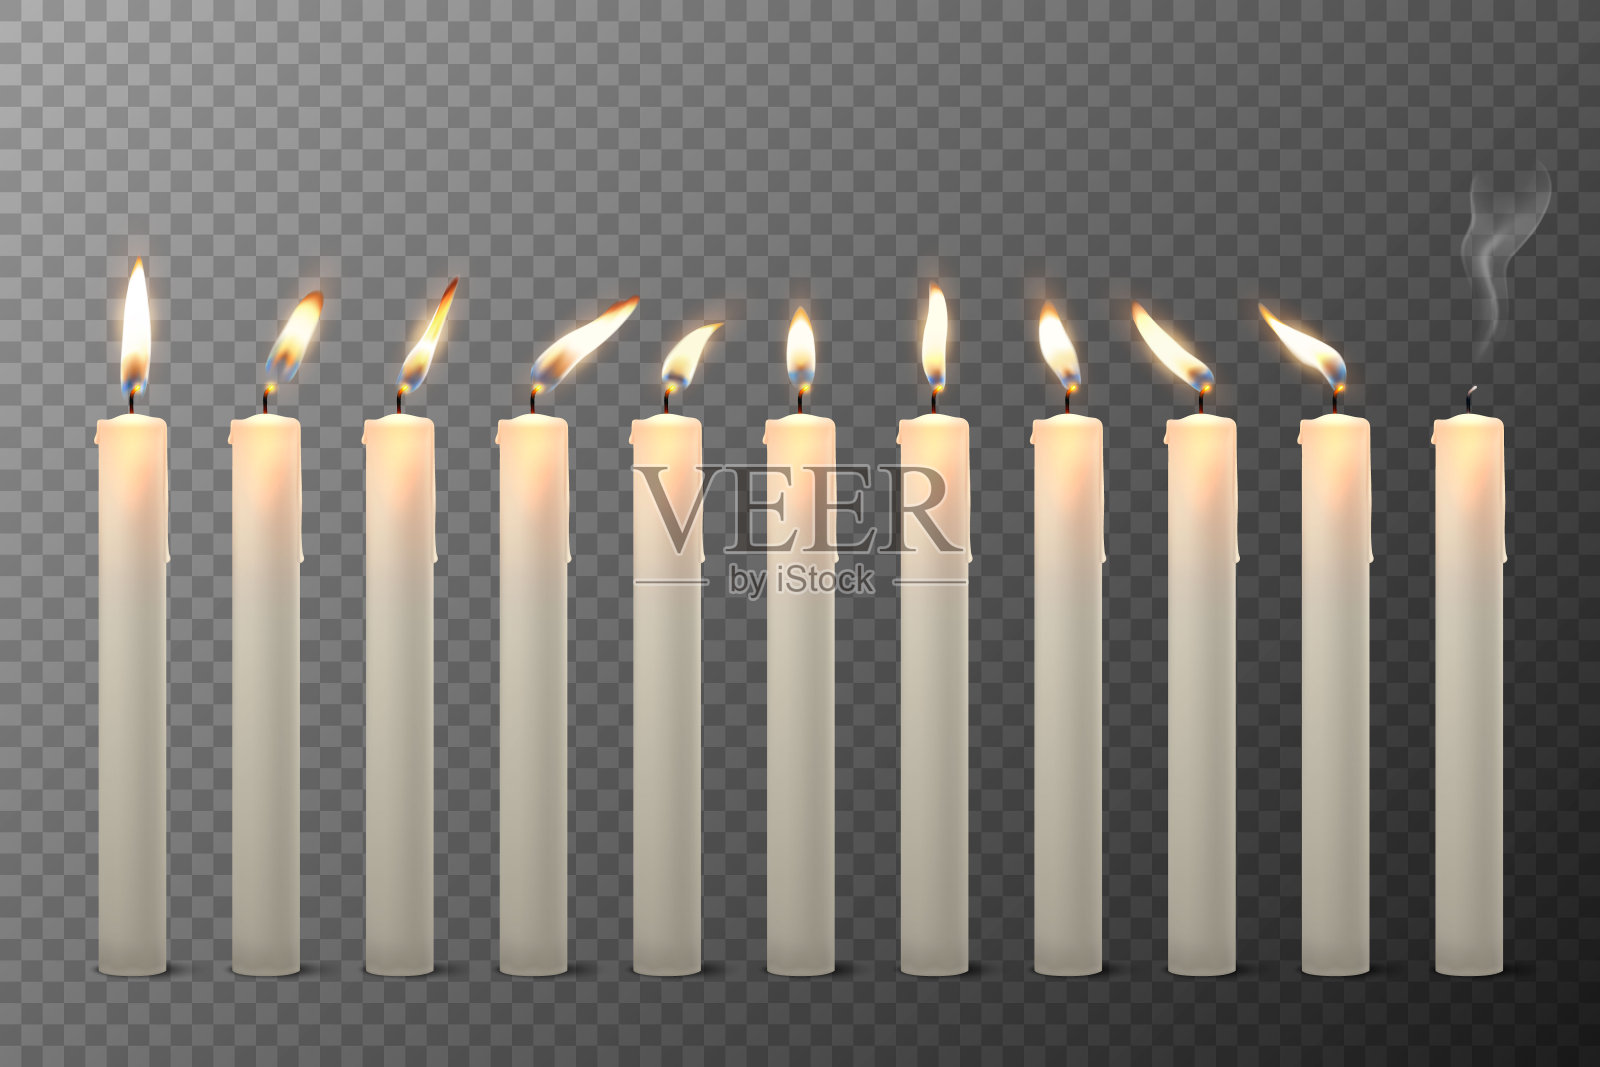 矢量3d现实白色石蜡或蜡燃烧蜡烛与不同的火焰图标设置特写孤立在透明背景。设计模板,剪纸艺术插画图片素材